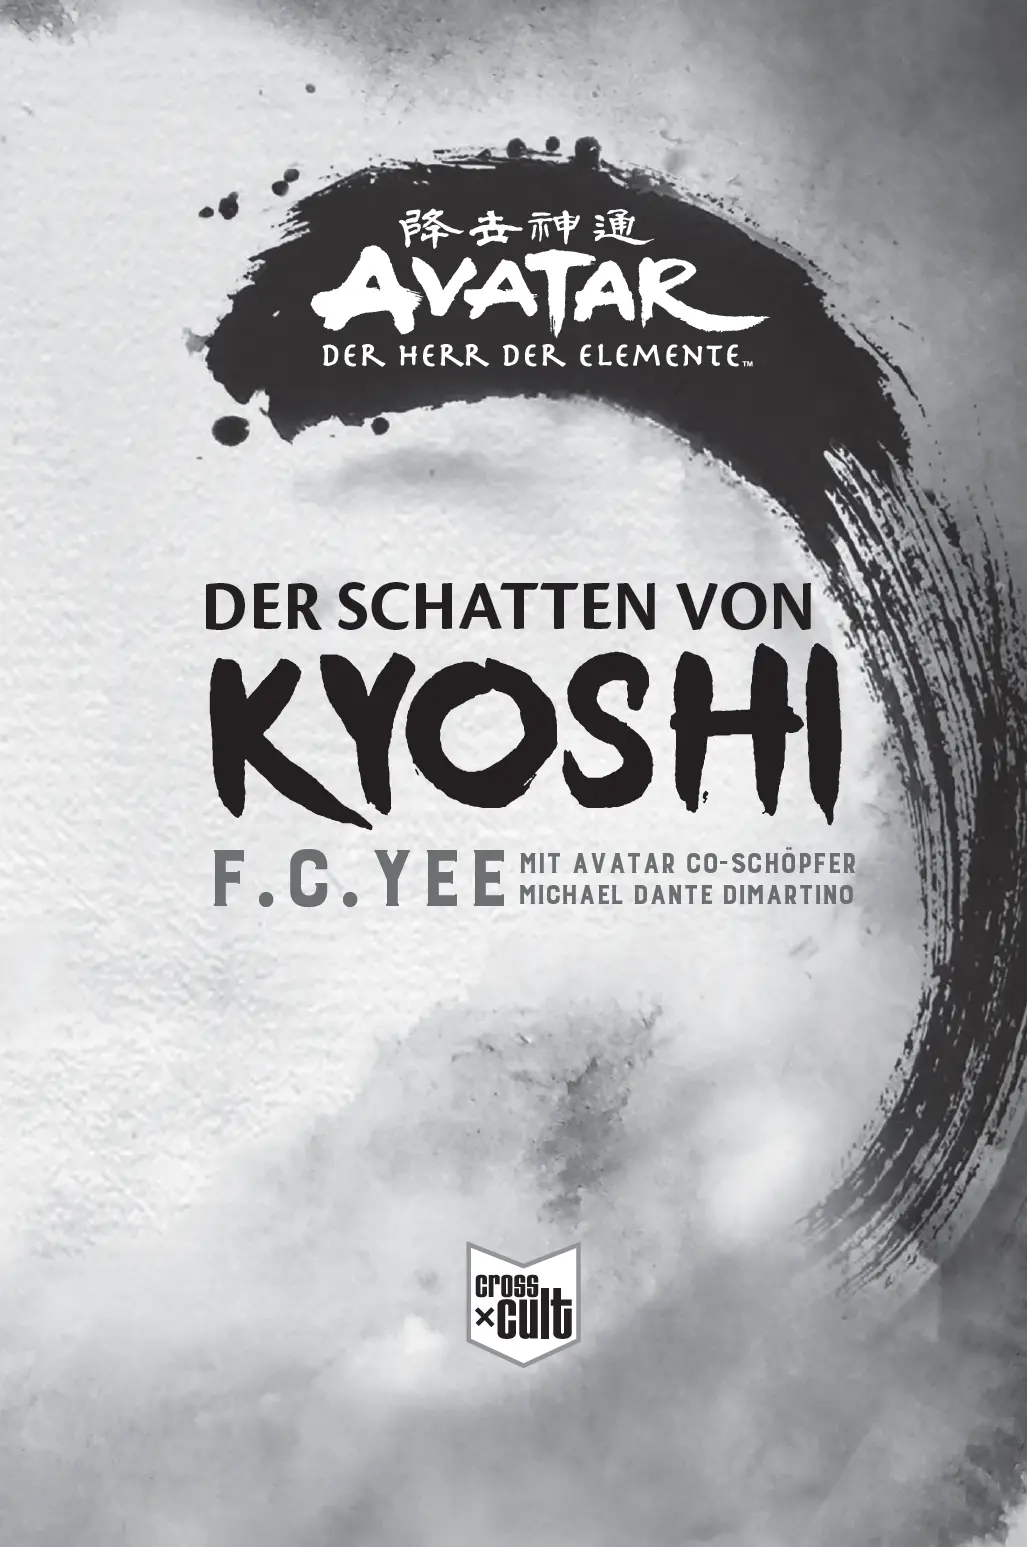 Die deutsche Ausgabe von AVATAR DER SCHATTEN VON KYOSHI wird herausgegeben - фото 1